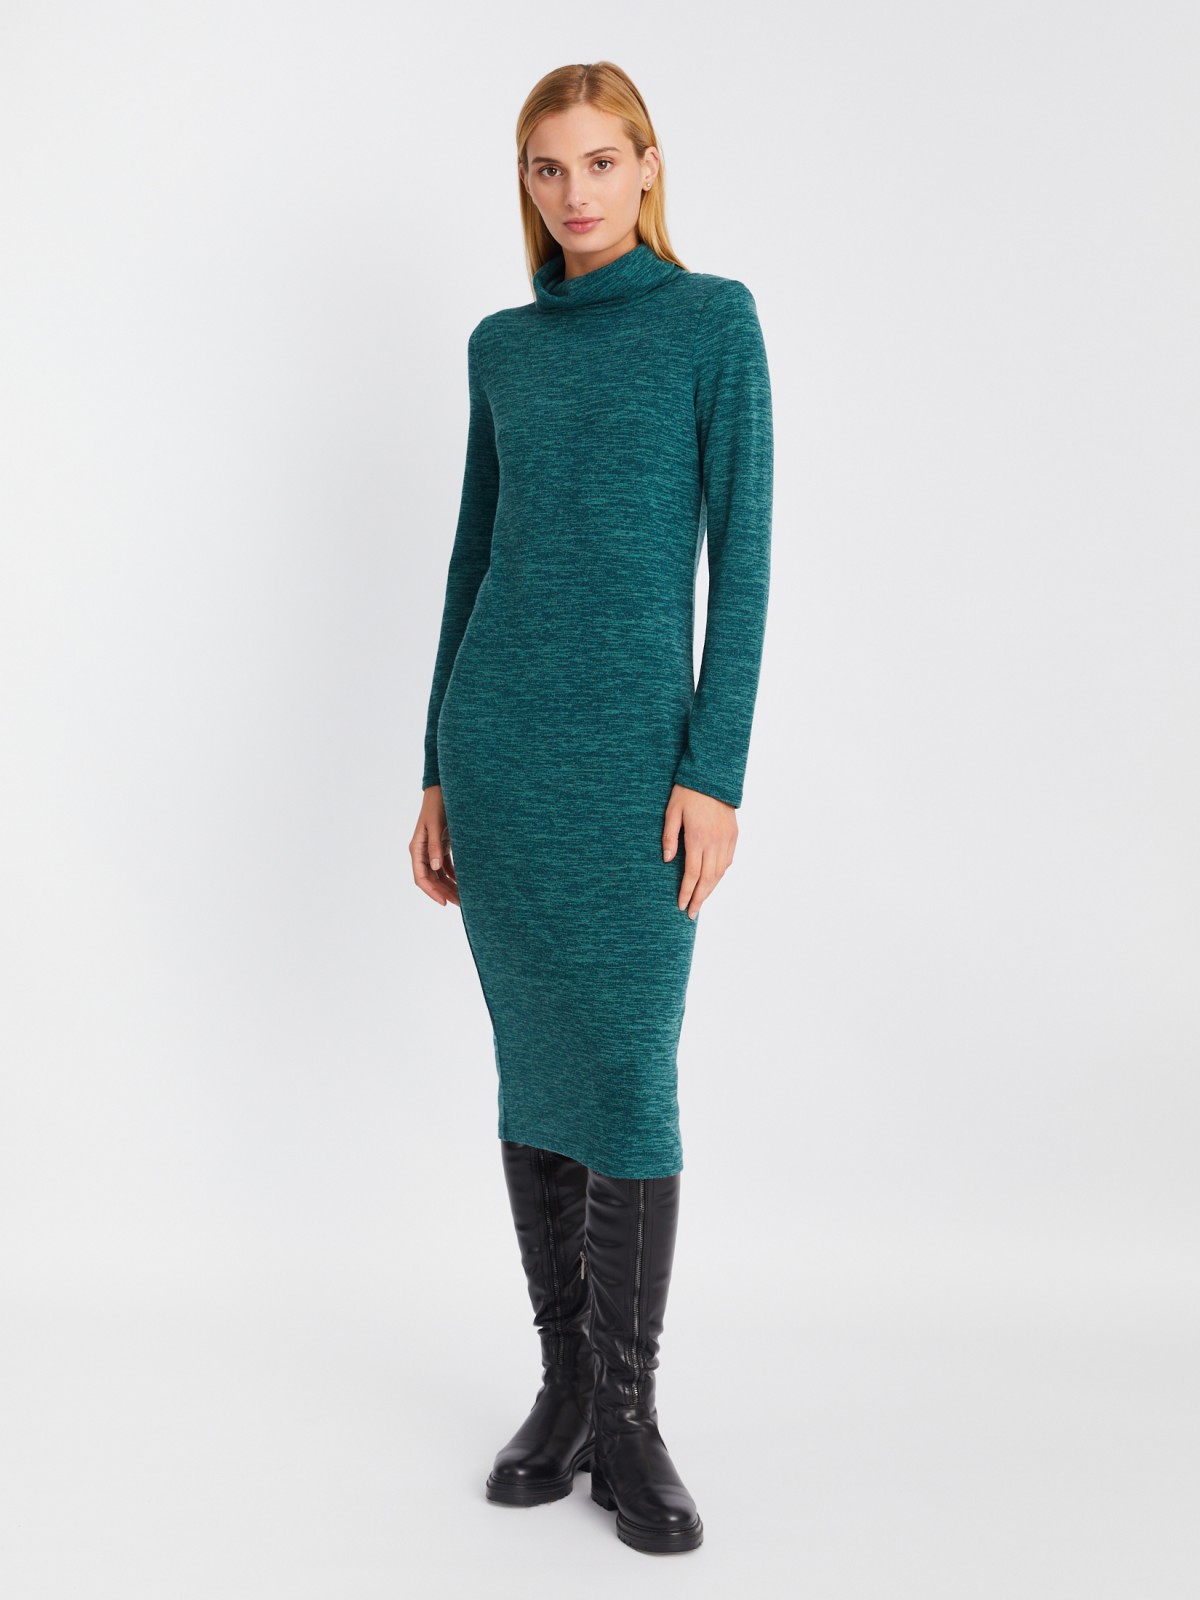 Трикотажное платье-свитер длины миди с высоким горлом zolla 02334819F062, цвет мятный, размер XS - фото 2